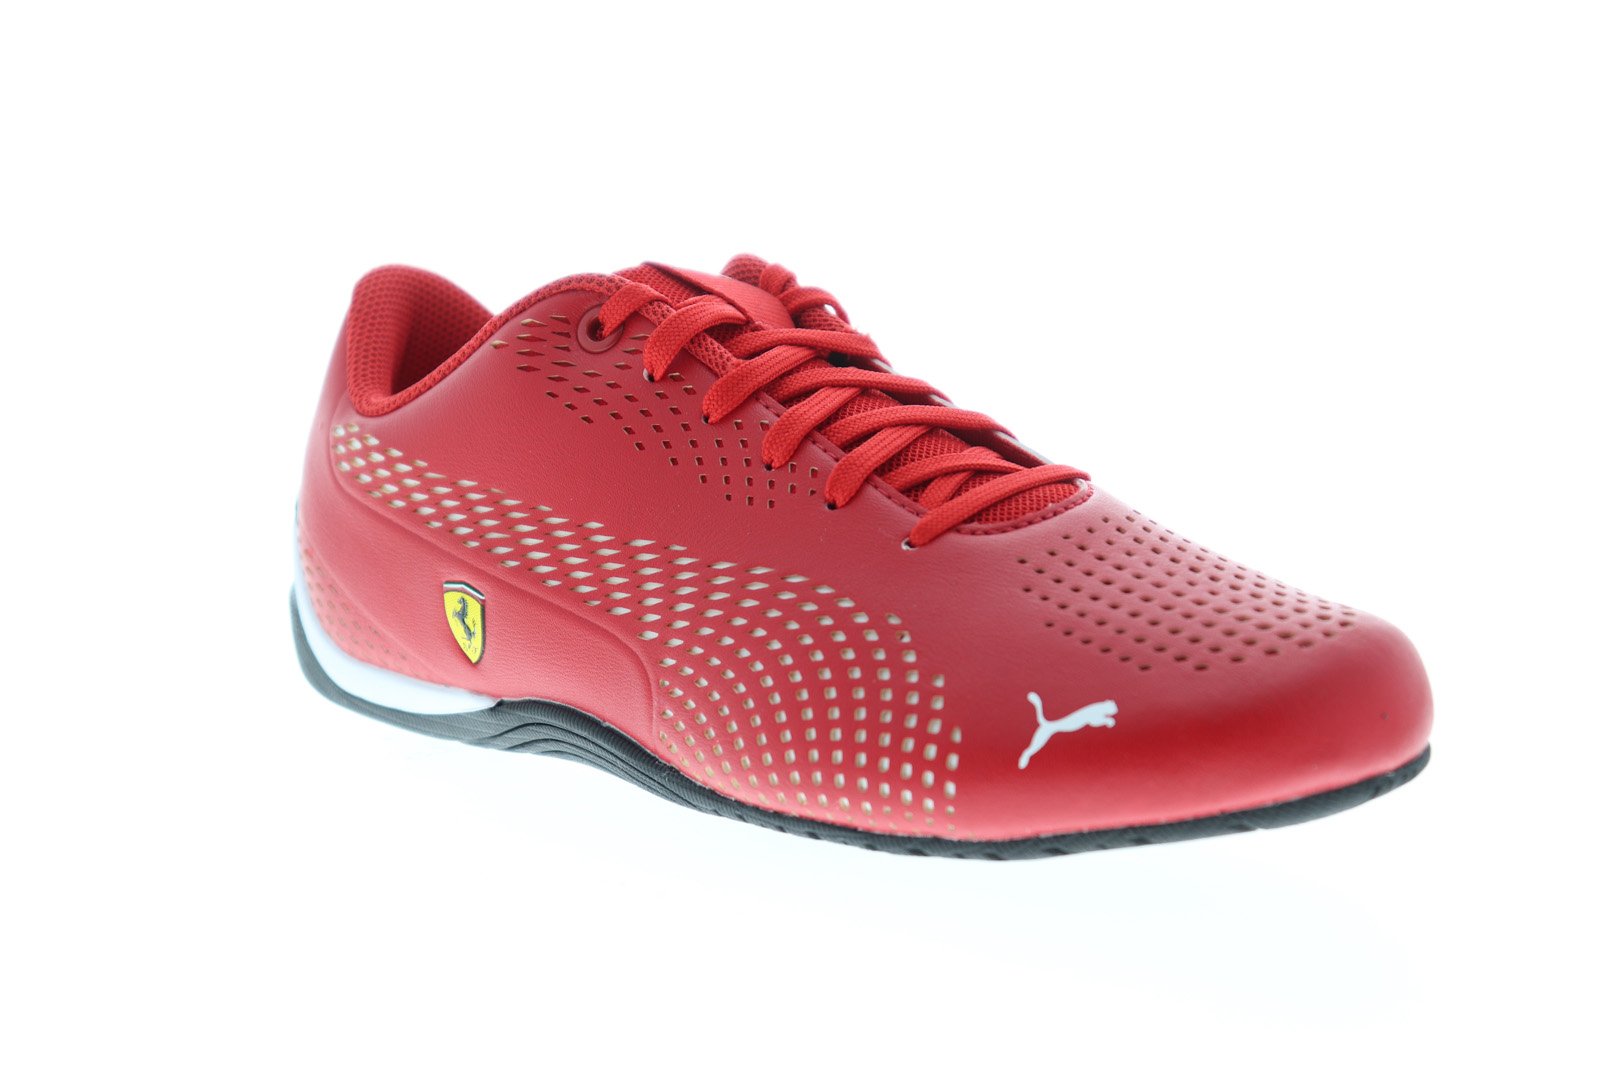 Puma Scuderia Drift Cat 5 Ultra II Red Motorsport Sneaker - Ruze Shoes